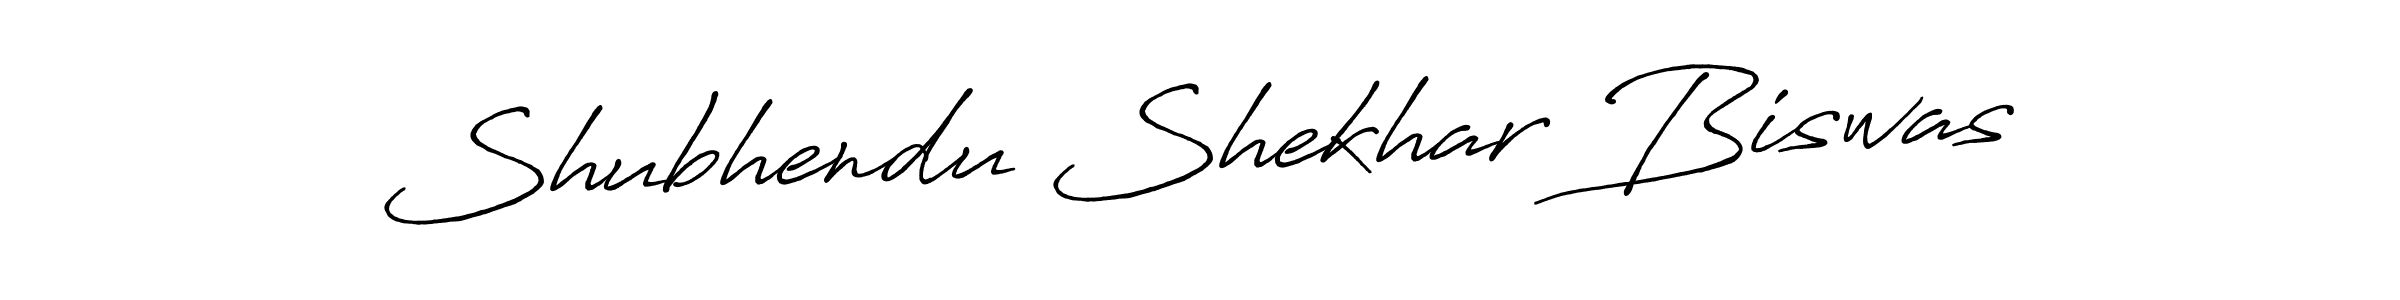 Shubhendu Shekhar Biswas stylish signature style. Best Handwritten Sign (Antro_Vectra_Bolder) for my name. Handwritten Signature Collection Ideas for my name Shubhendu Shekhar Biswas. Shubhendu Shekhar Biswas signature style 7 images and pictures png